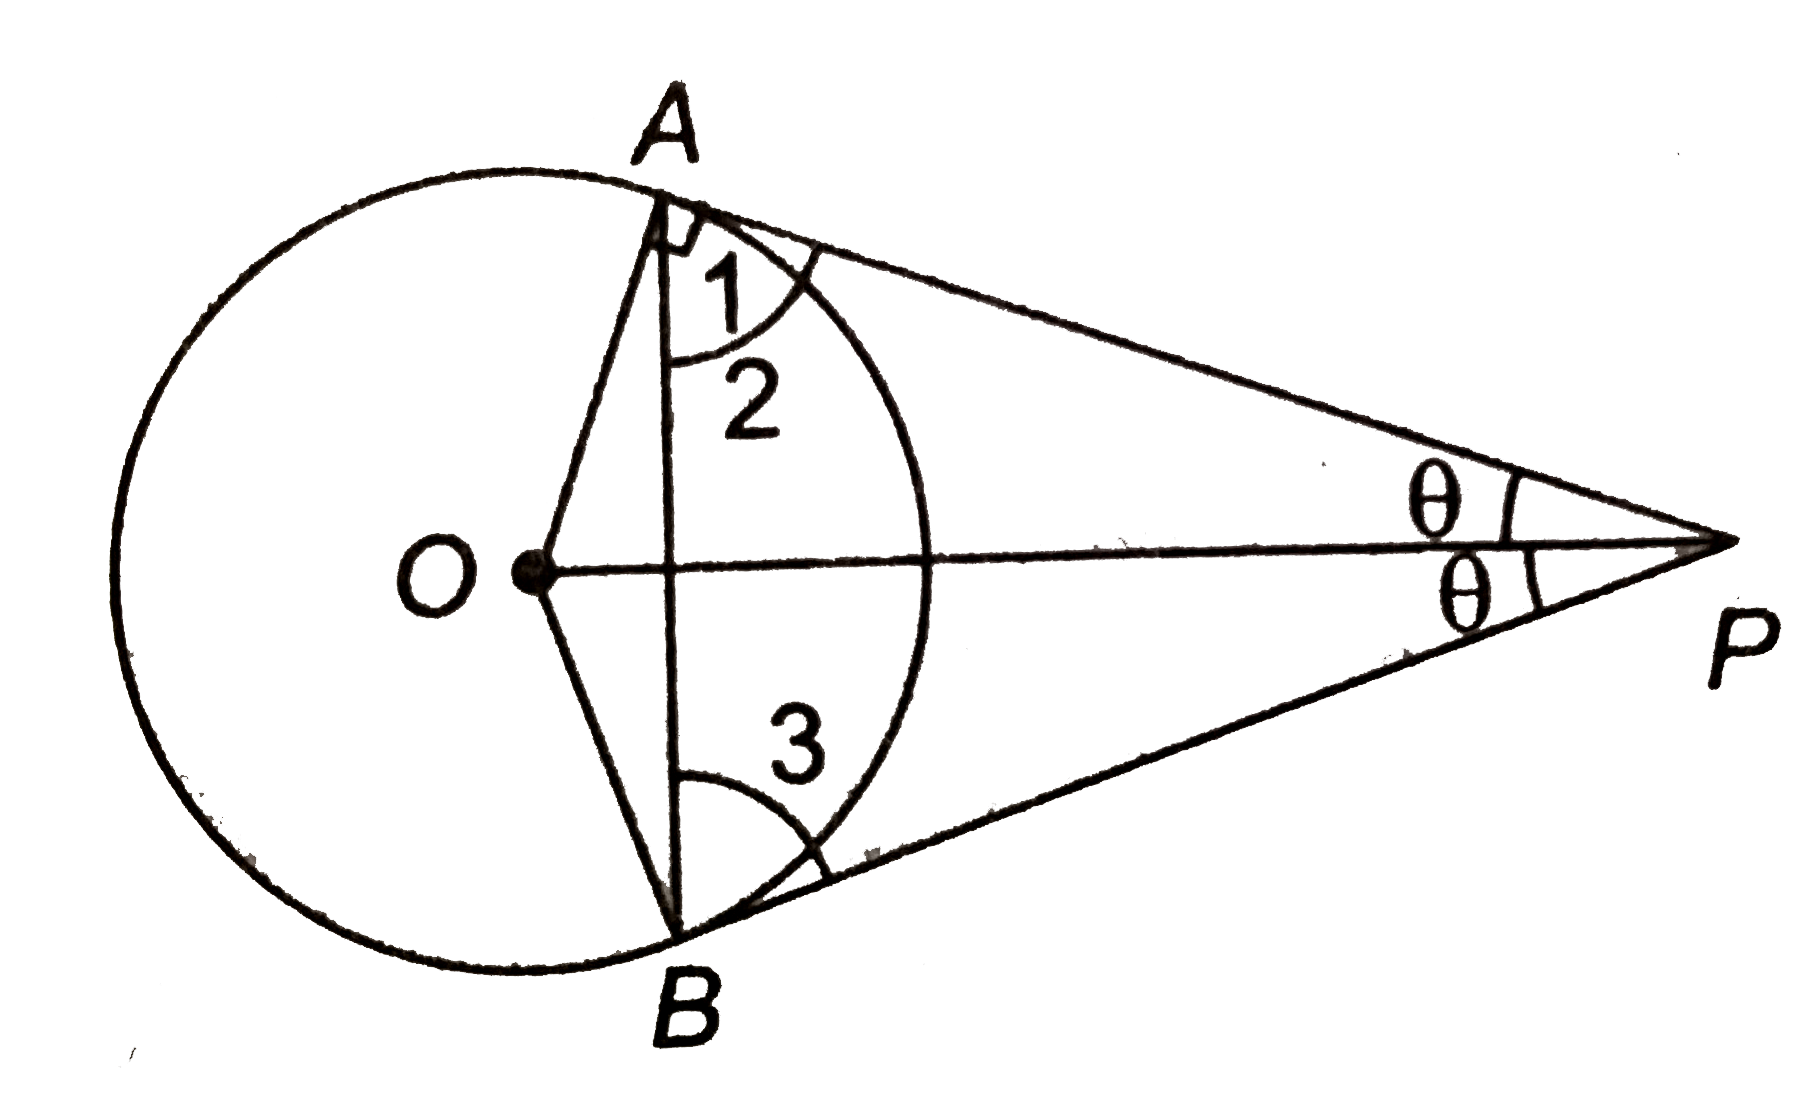 दी आकृति में, OP वृत्त के व्यास के बराबर है। सिद्ध कीजिए कि DeltaABP एक समबाहु त्रिभुज है।